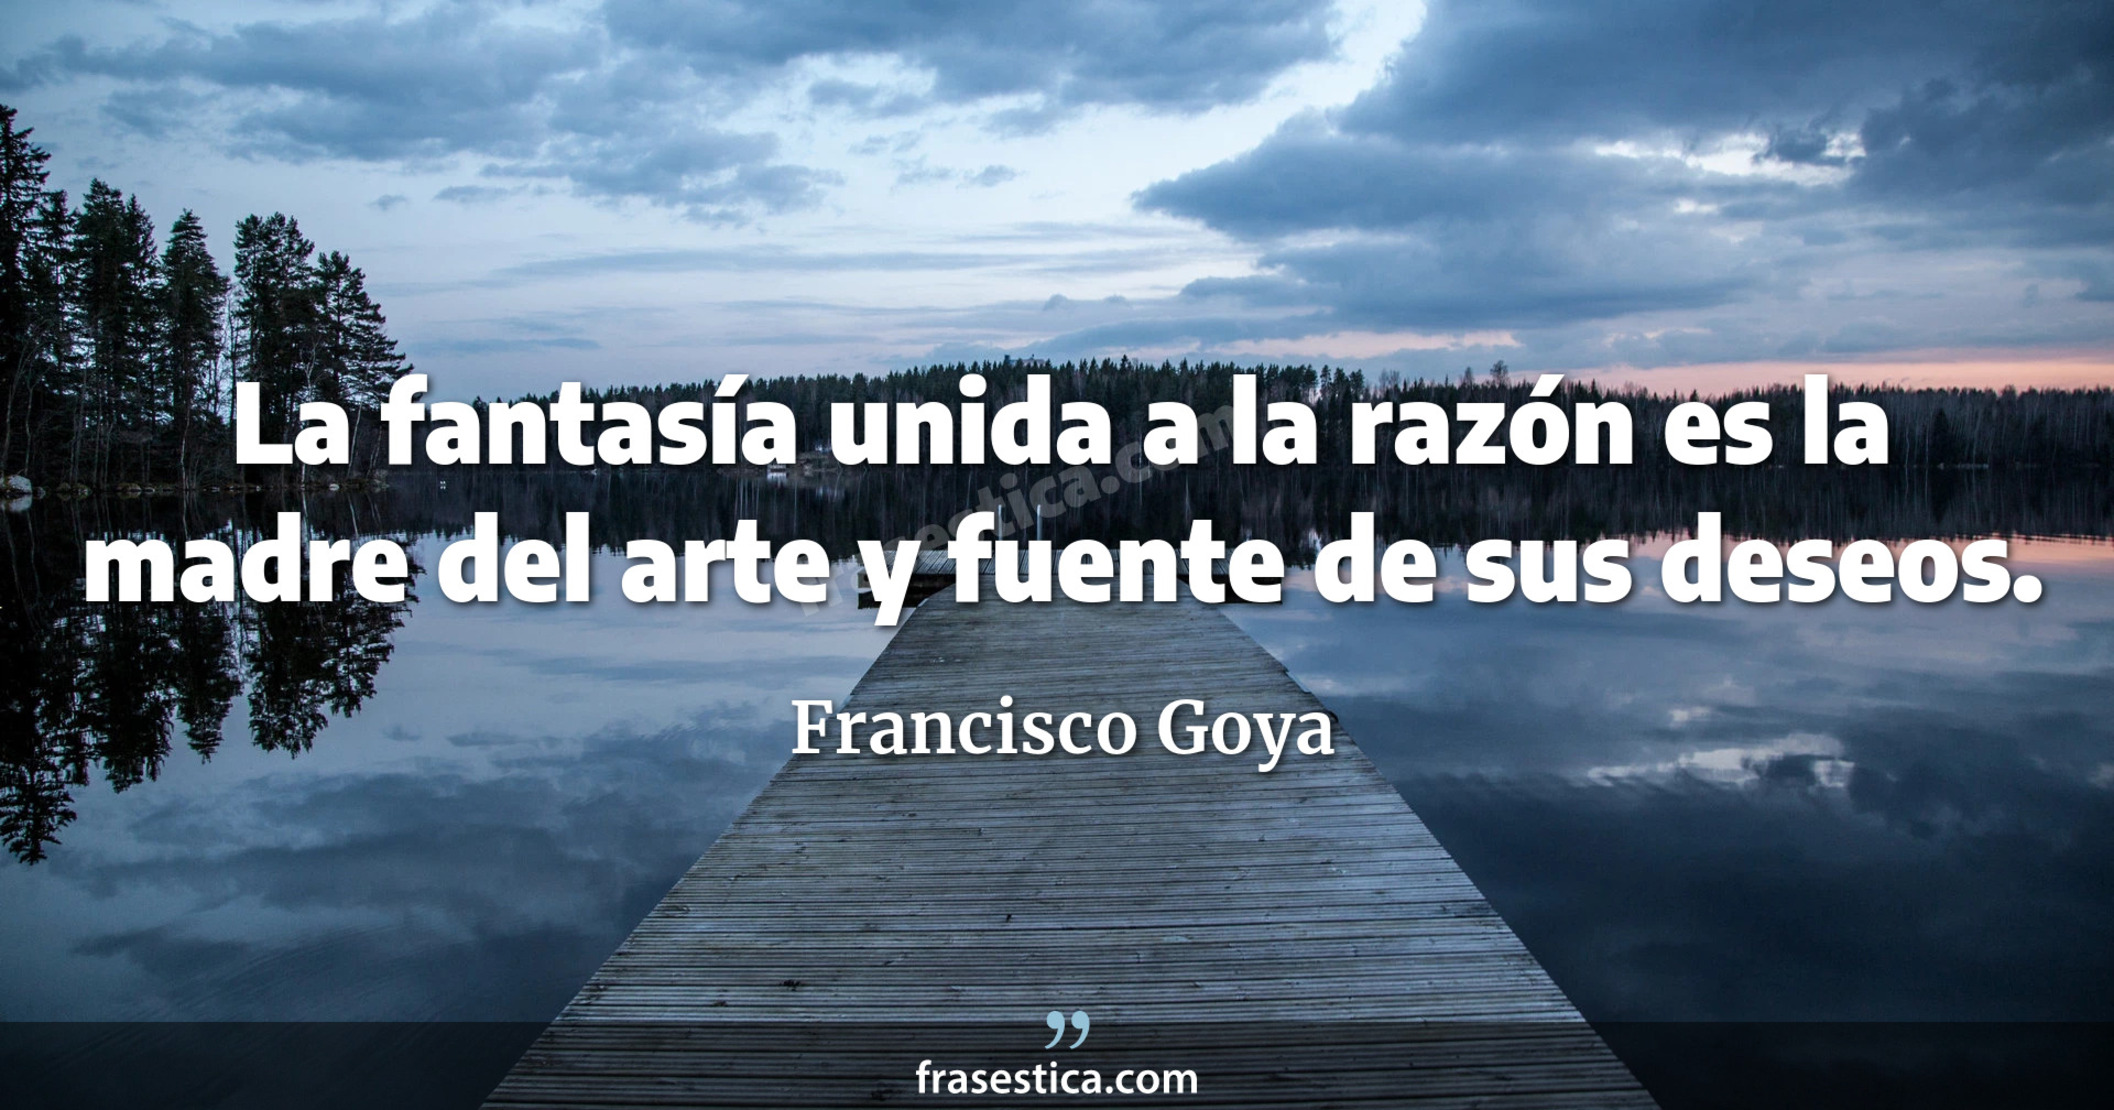 La fantasía unida a la razón es la madre del arte y fuente de sus deseos. - Francisco Goya